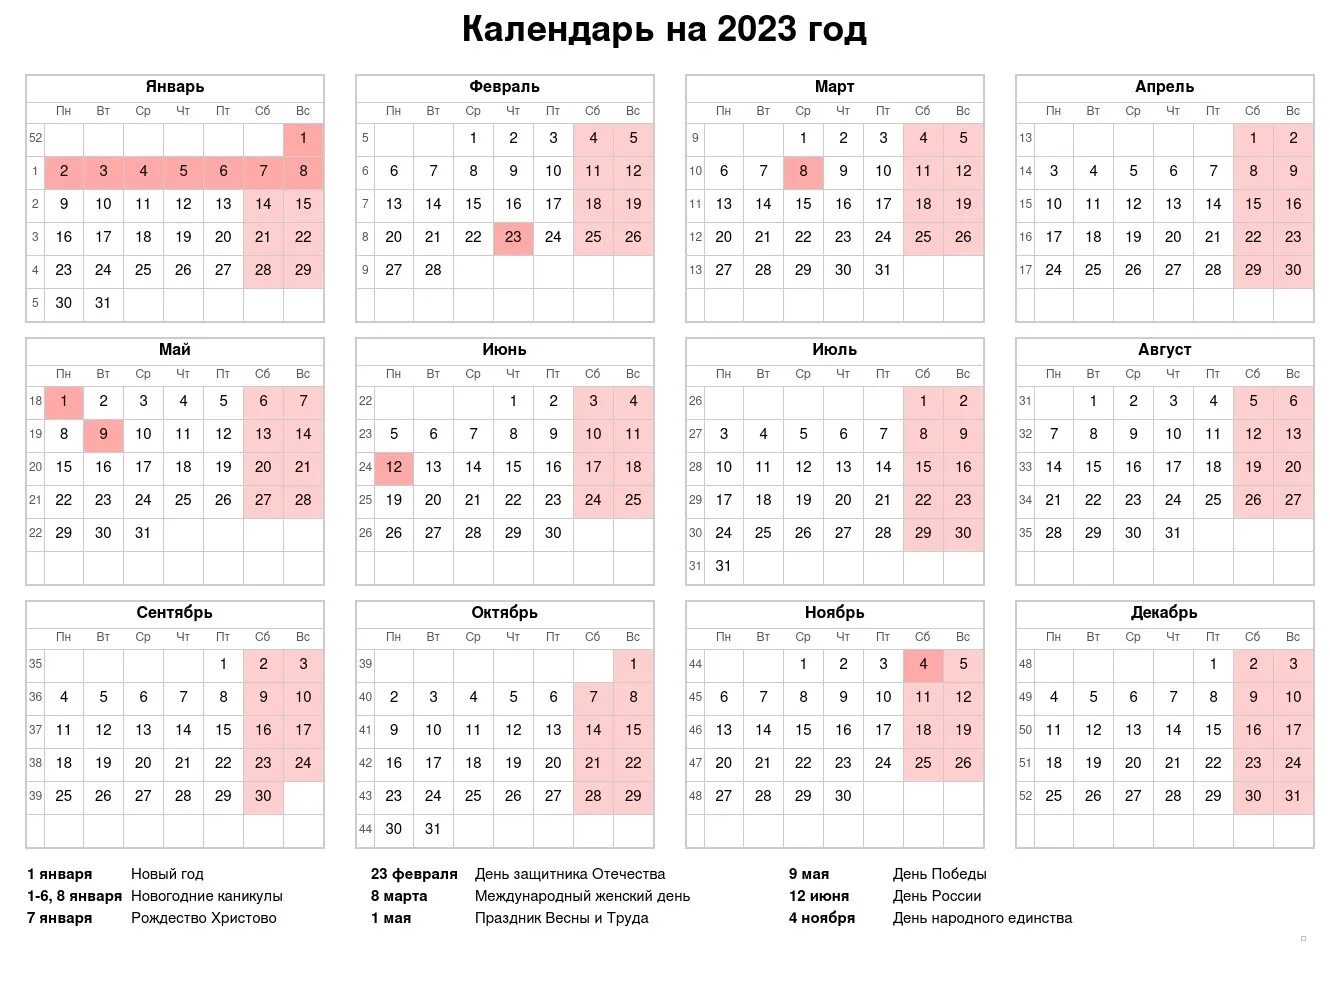 Производственный календарь на 2022 год с праздниками и выходными. Выходные и праздники 2022 года в России нерабочие дни. Календарь выходных и праздничных дней на 2022 год в России. Праздничные и выходные дни в 2022 году в России Министерство труда. Выходные и рабочие дни в марте